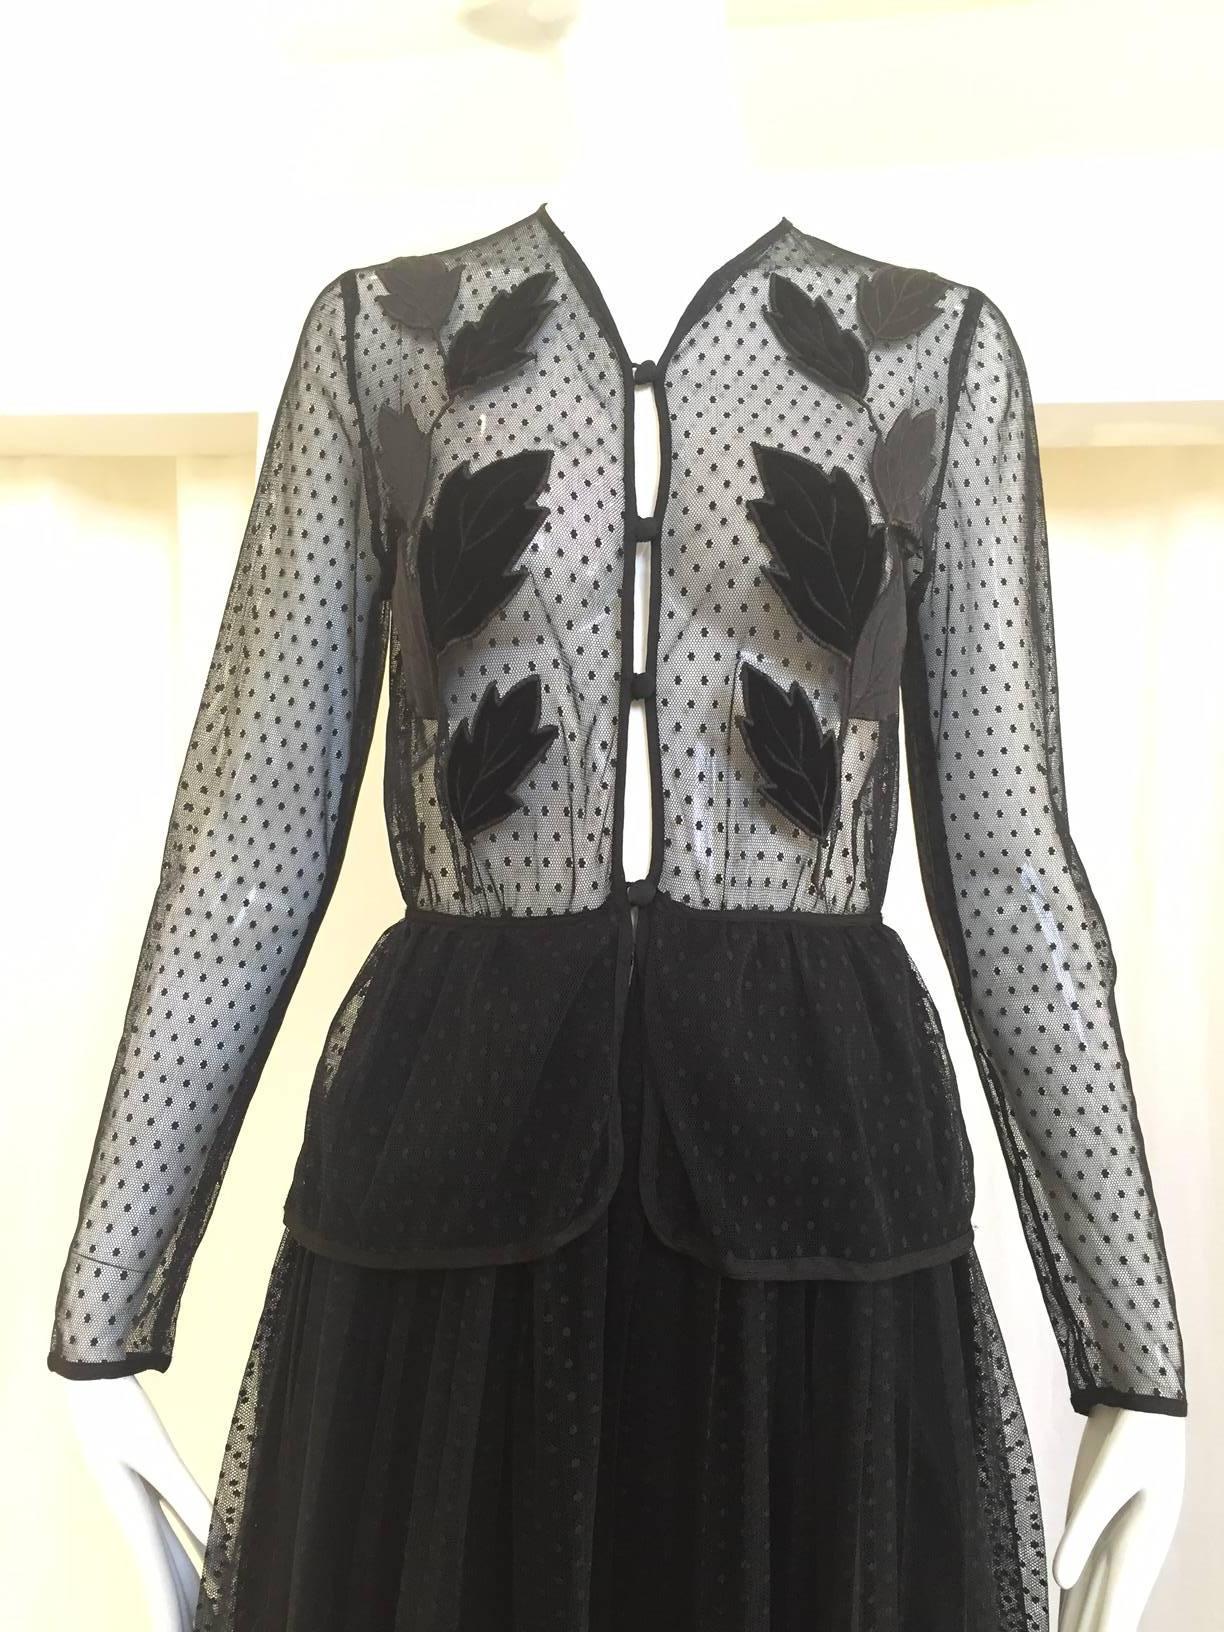 80s Frank Usher black sheer dress with velvet leaves applique. Size: 2
Bust: 32